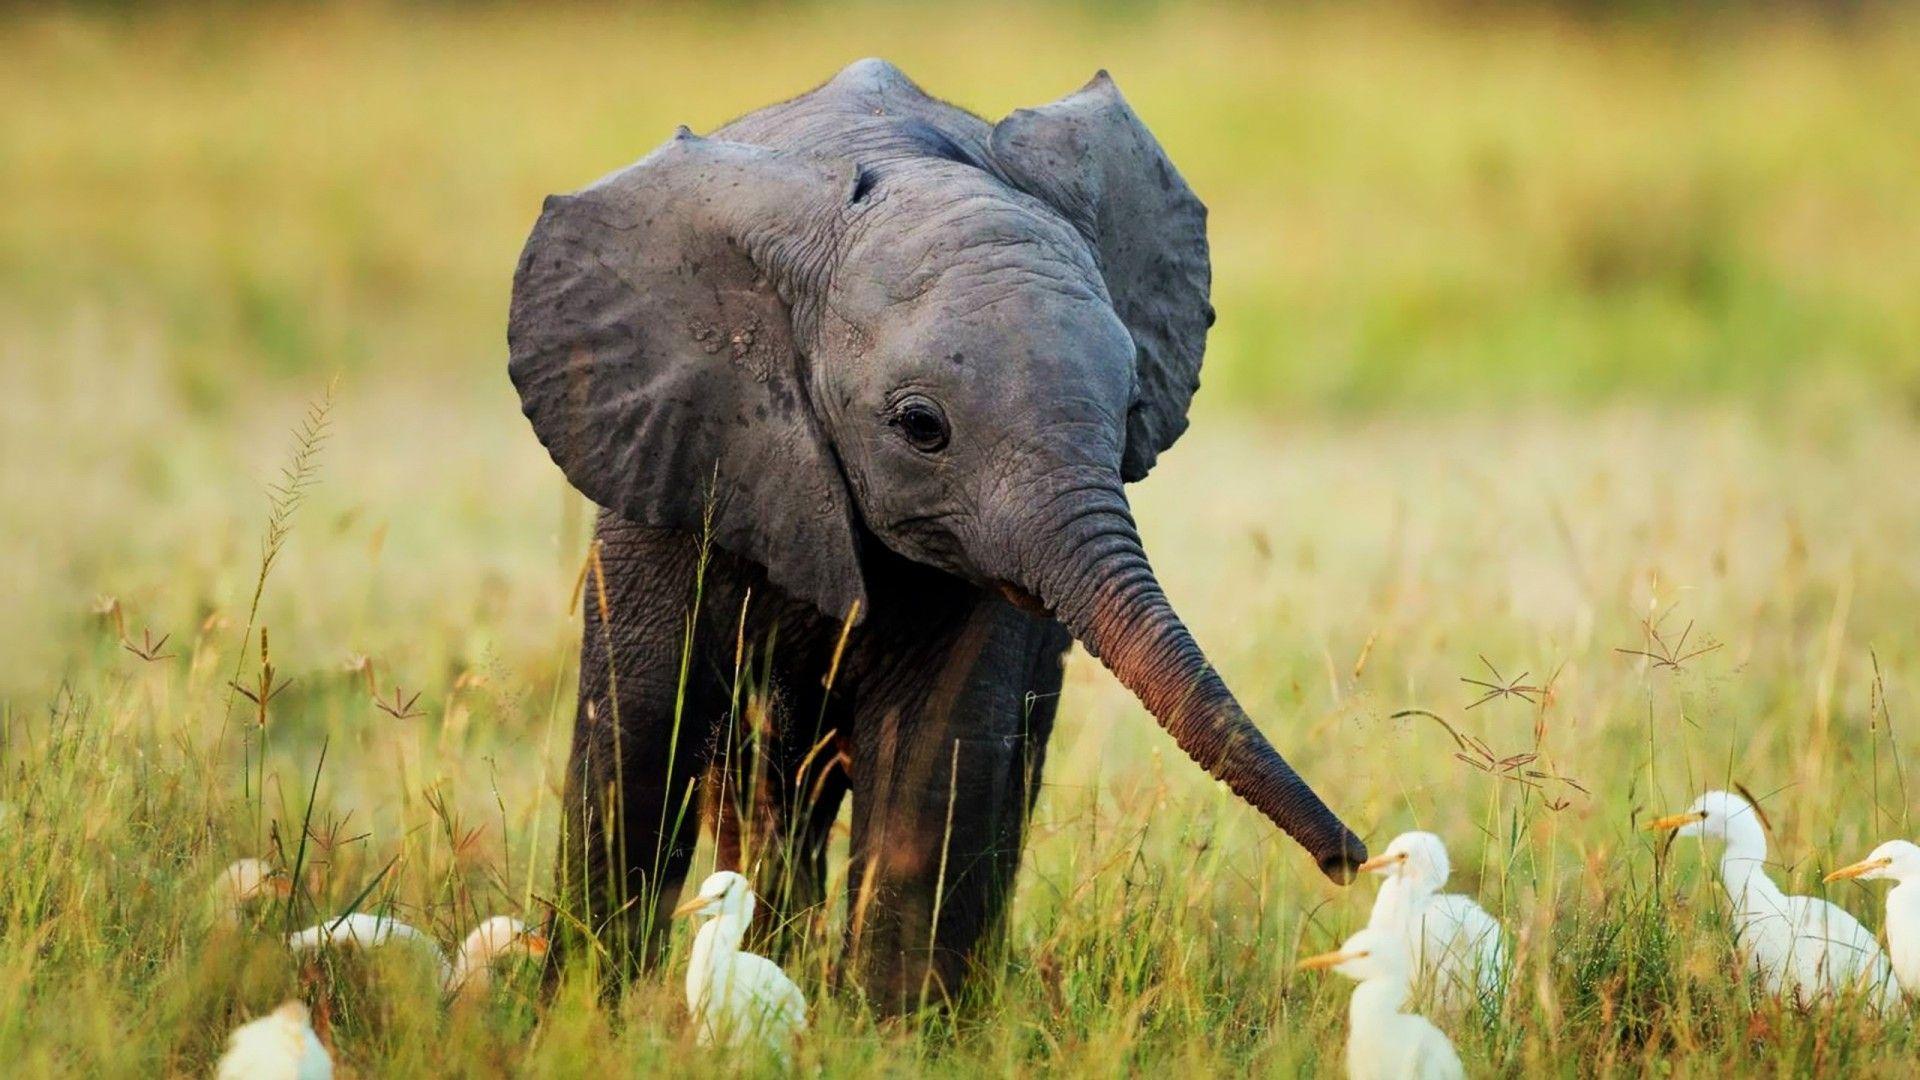 500 Free Baby Elephant  Elephant Images  Pixabay